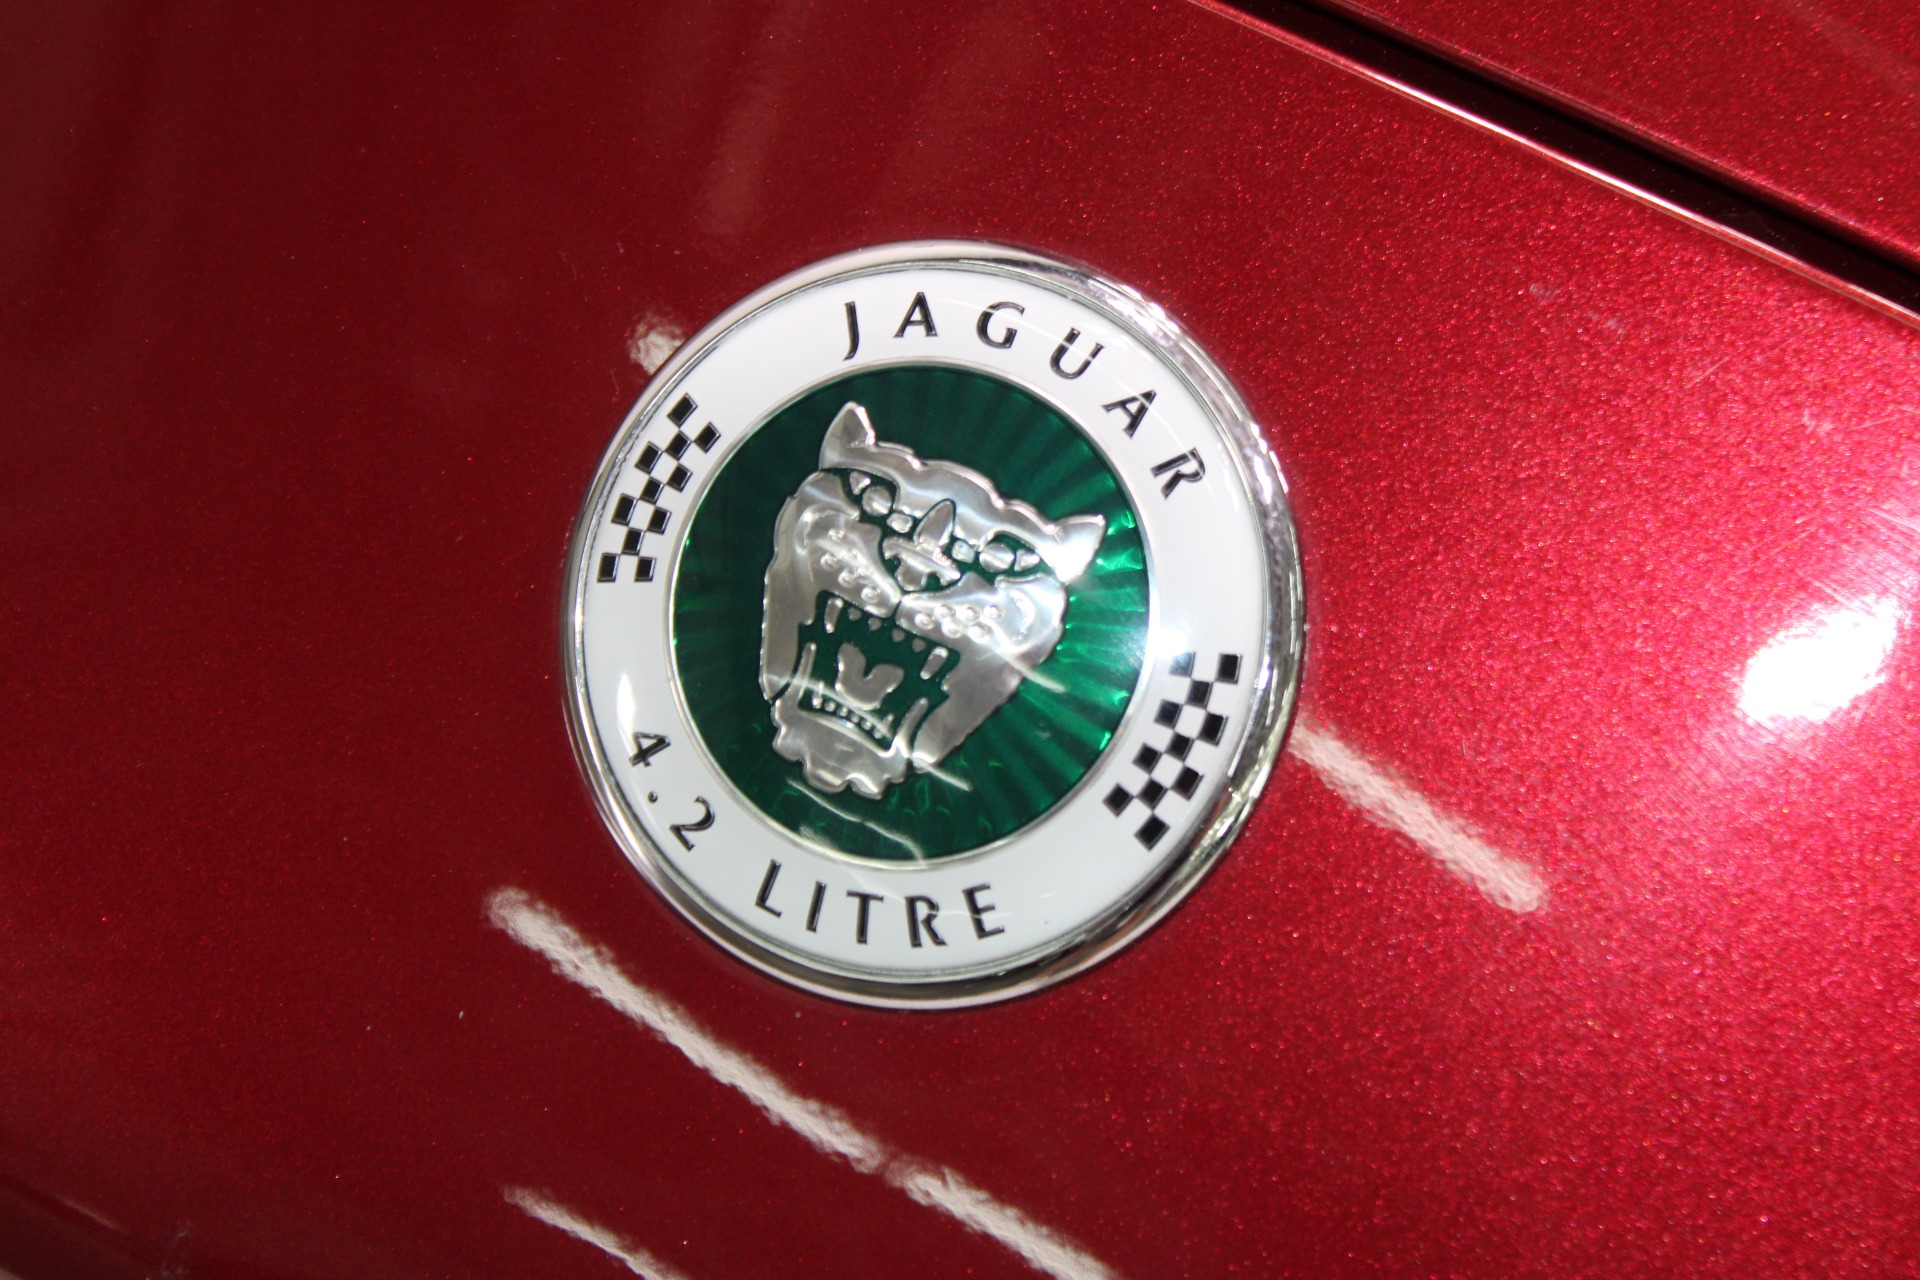 Used-2006-Jaguar-XK8-Victory-Edition-Convertible-Porsche